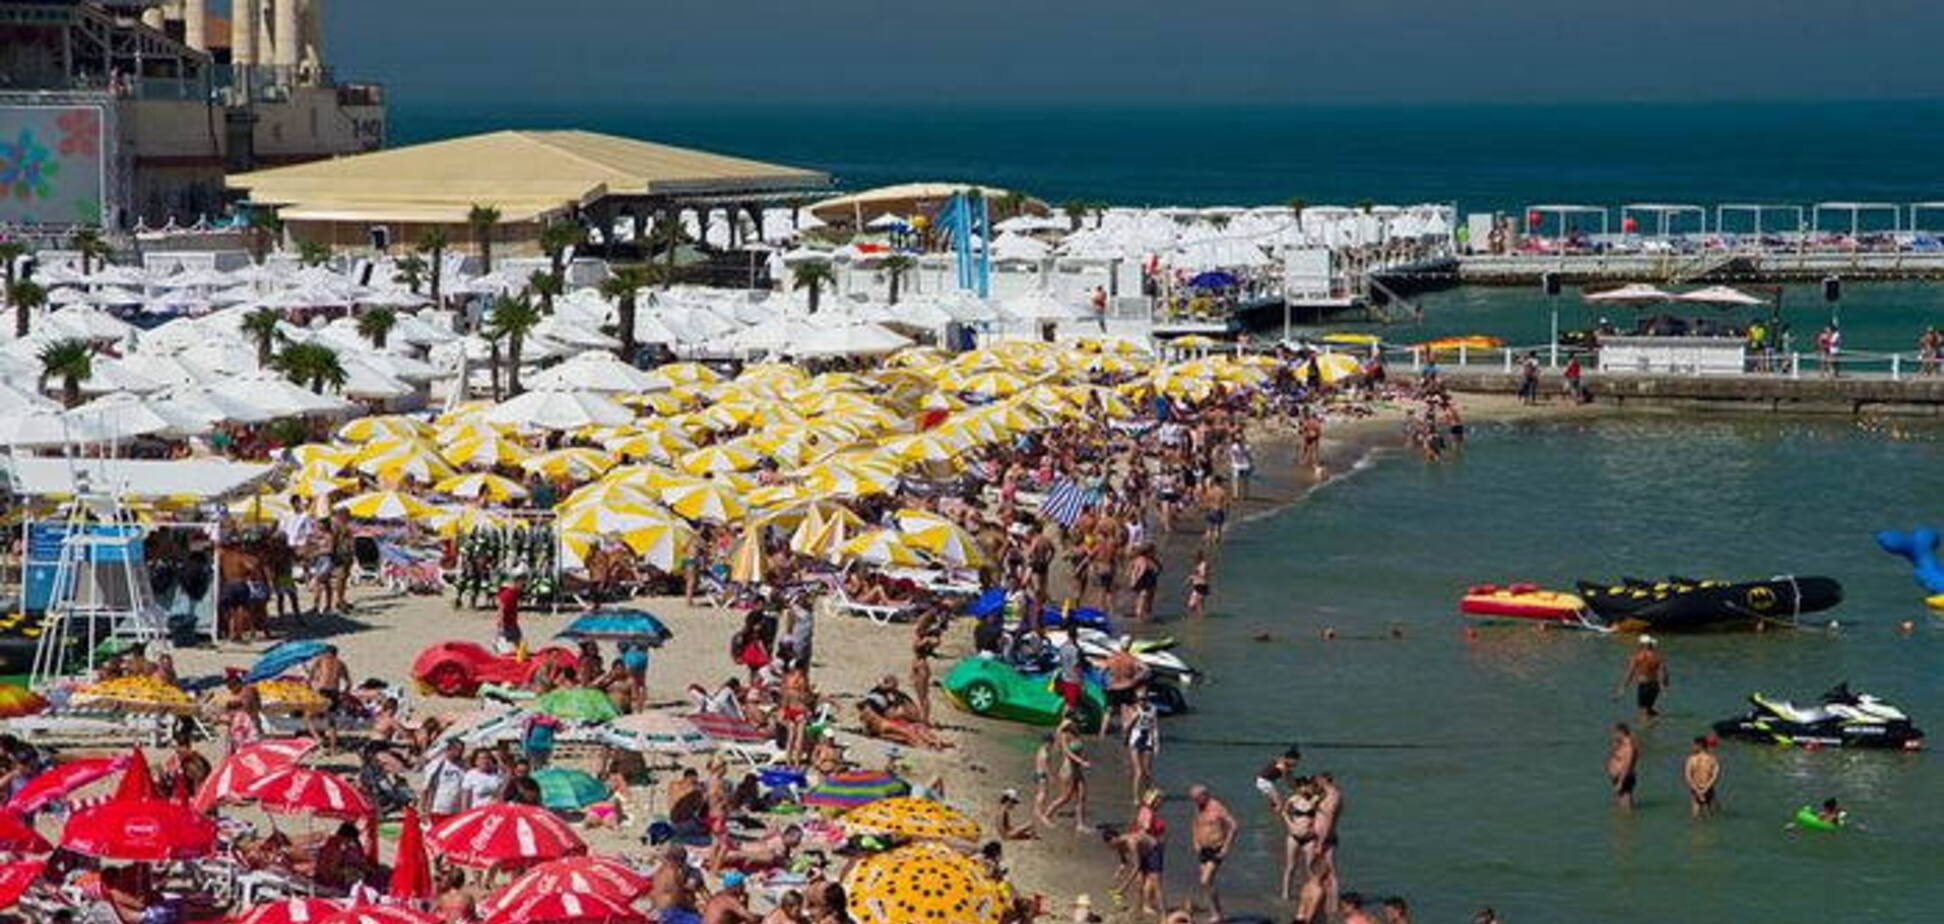 Від 50 грн за добу: топ-5 недорогих курортів на півдні України